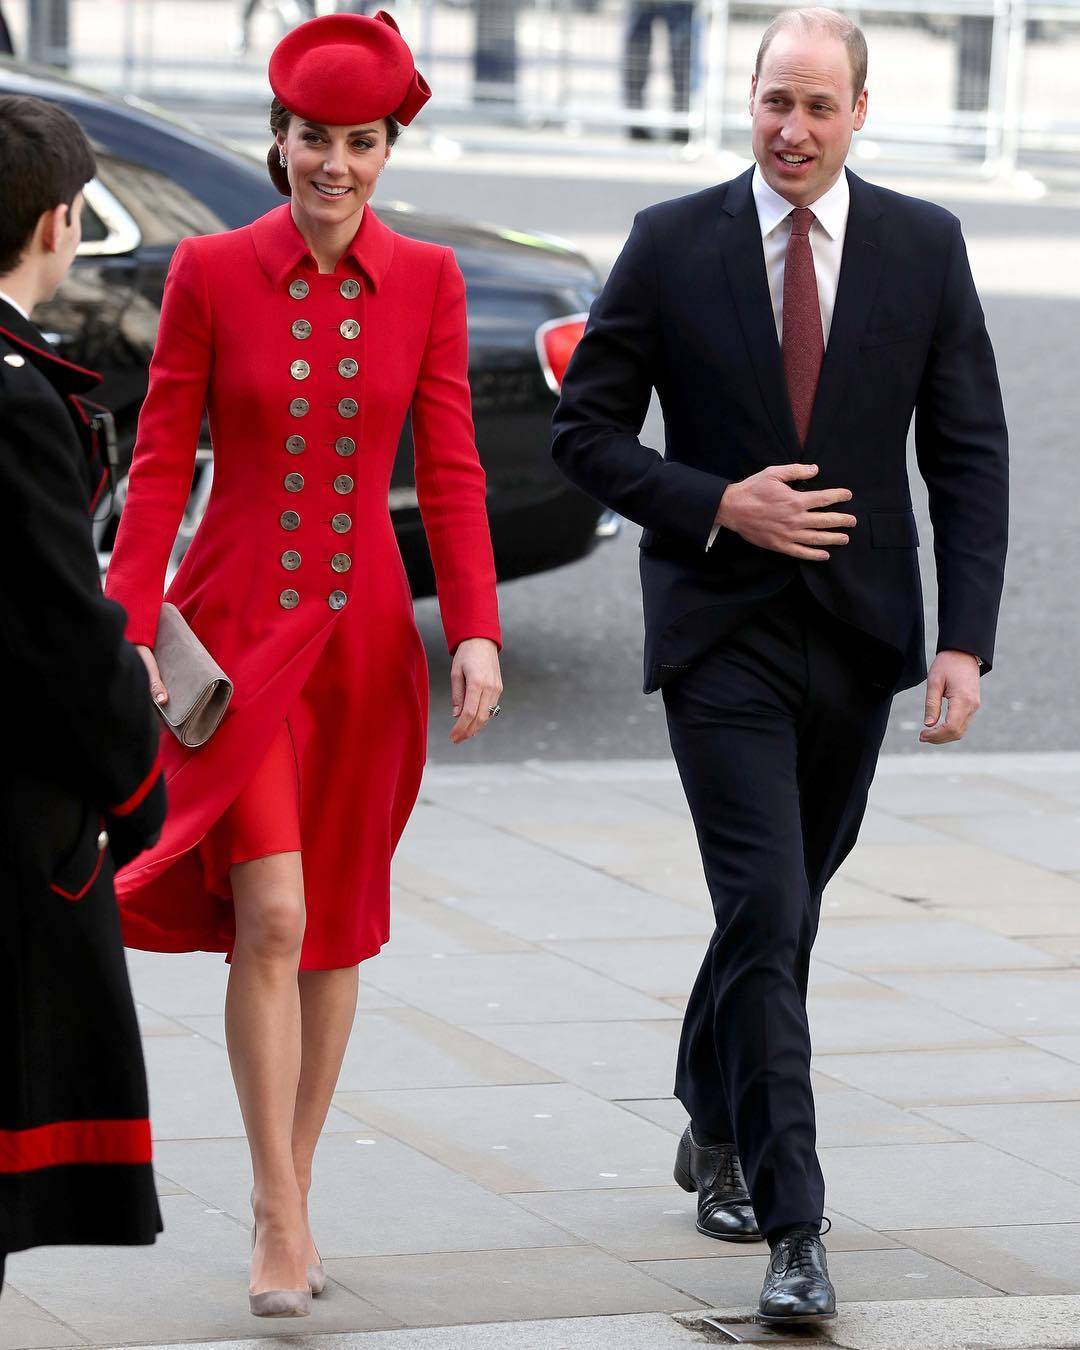 L'indiscrezione: "Kate Middleton scappò ben due volte da sola all'estero"